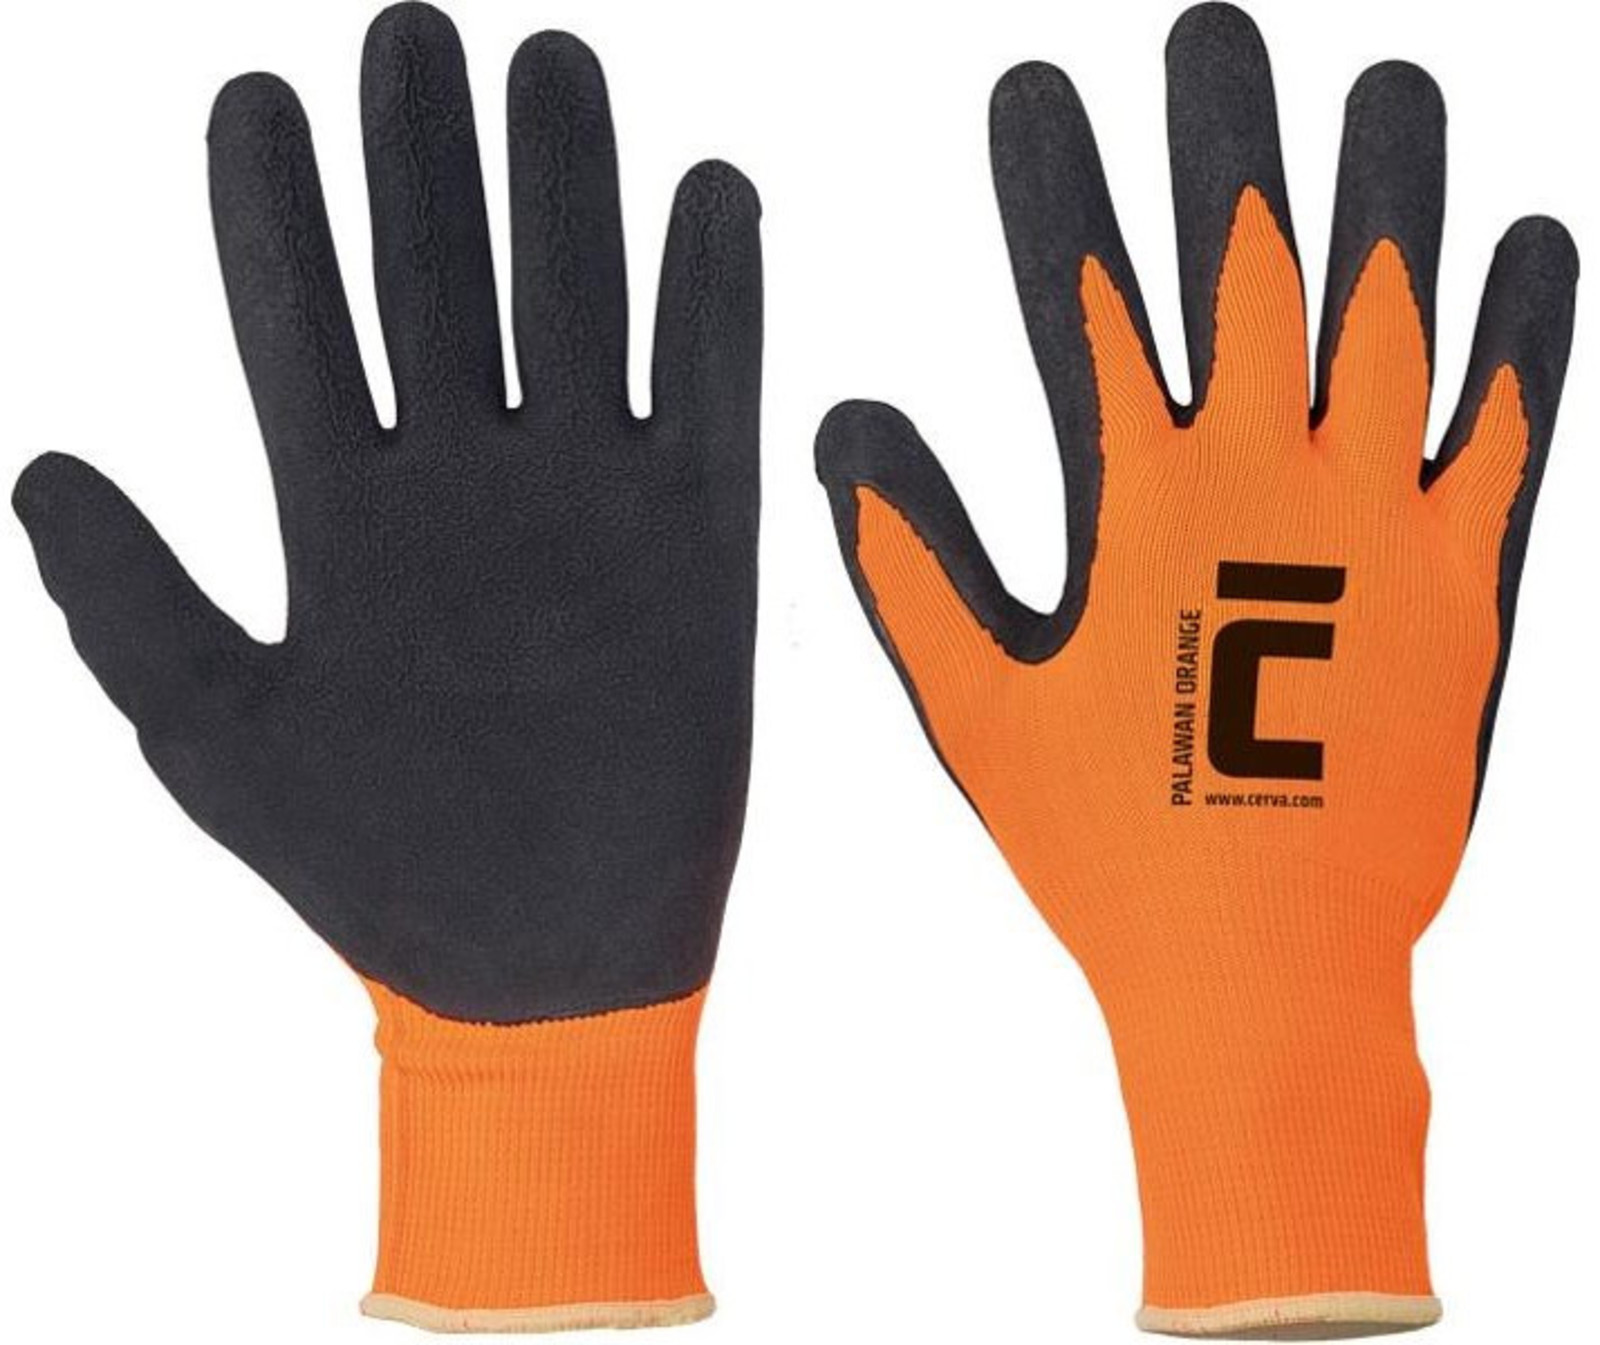 Pracovné rukavice Cerva Palawan - veľkosť: 8/M, farba: oranžová